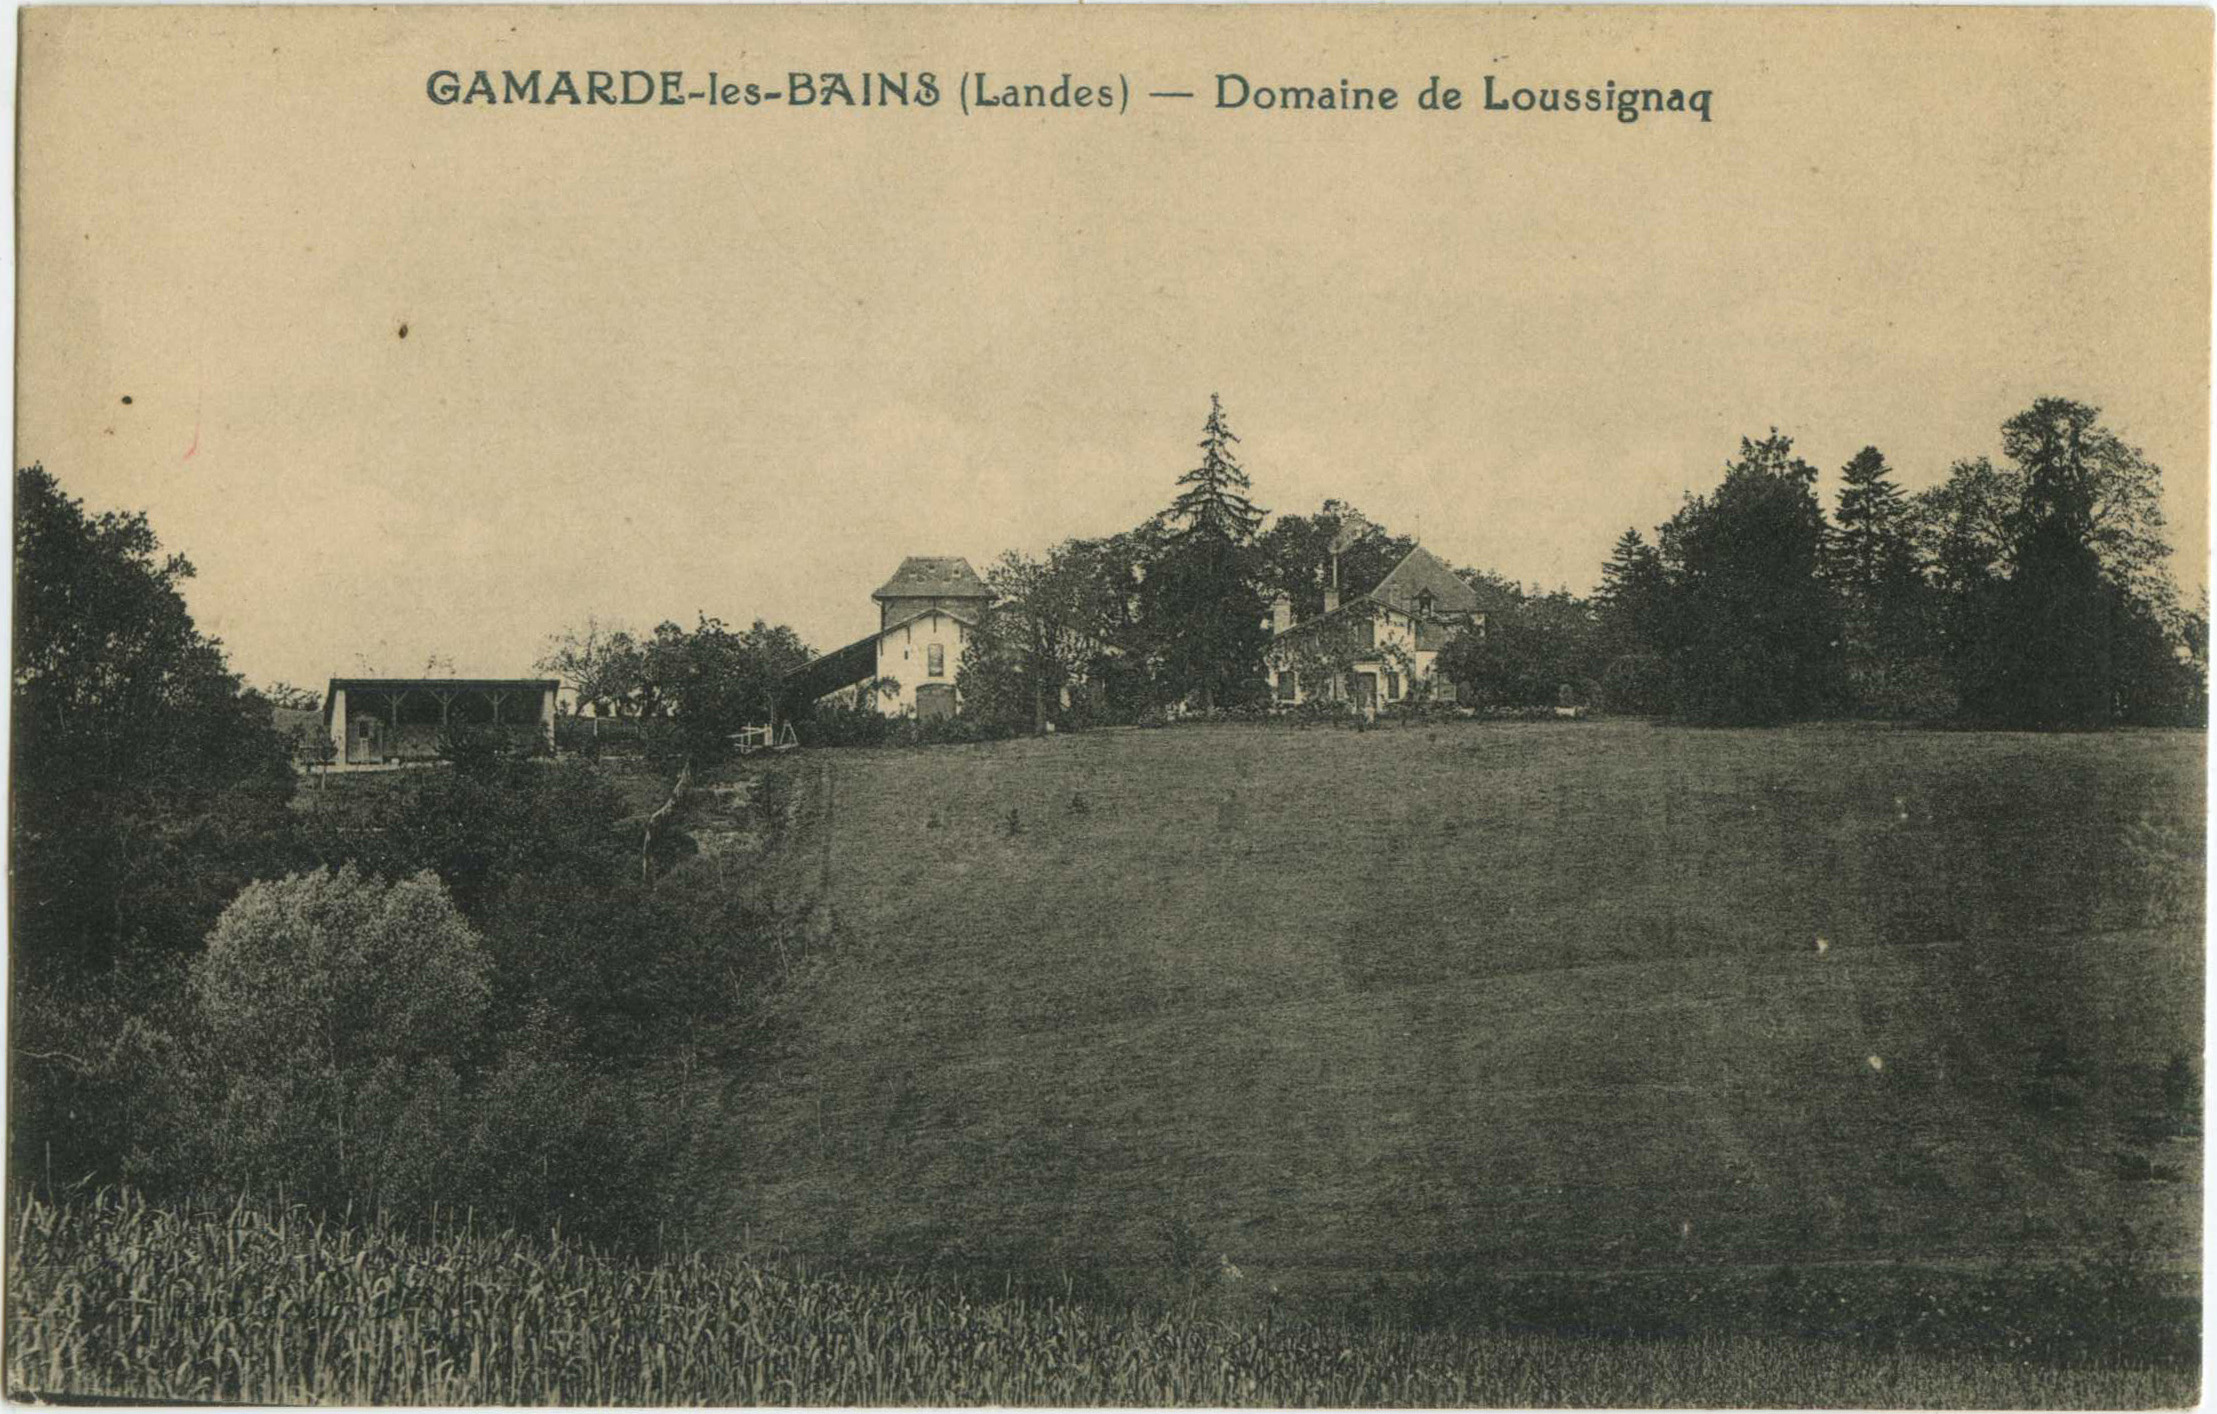 Gamarde-les-Bains - Domaine de Loussignaq